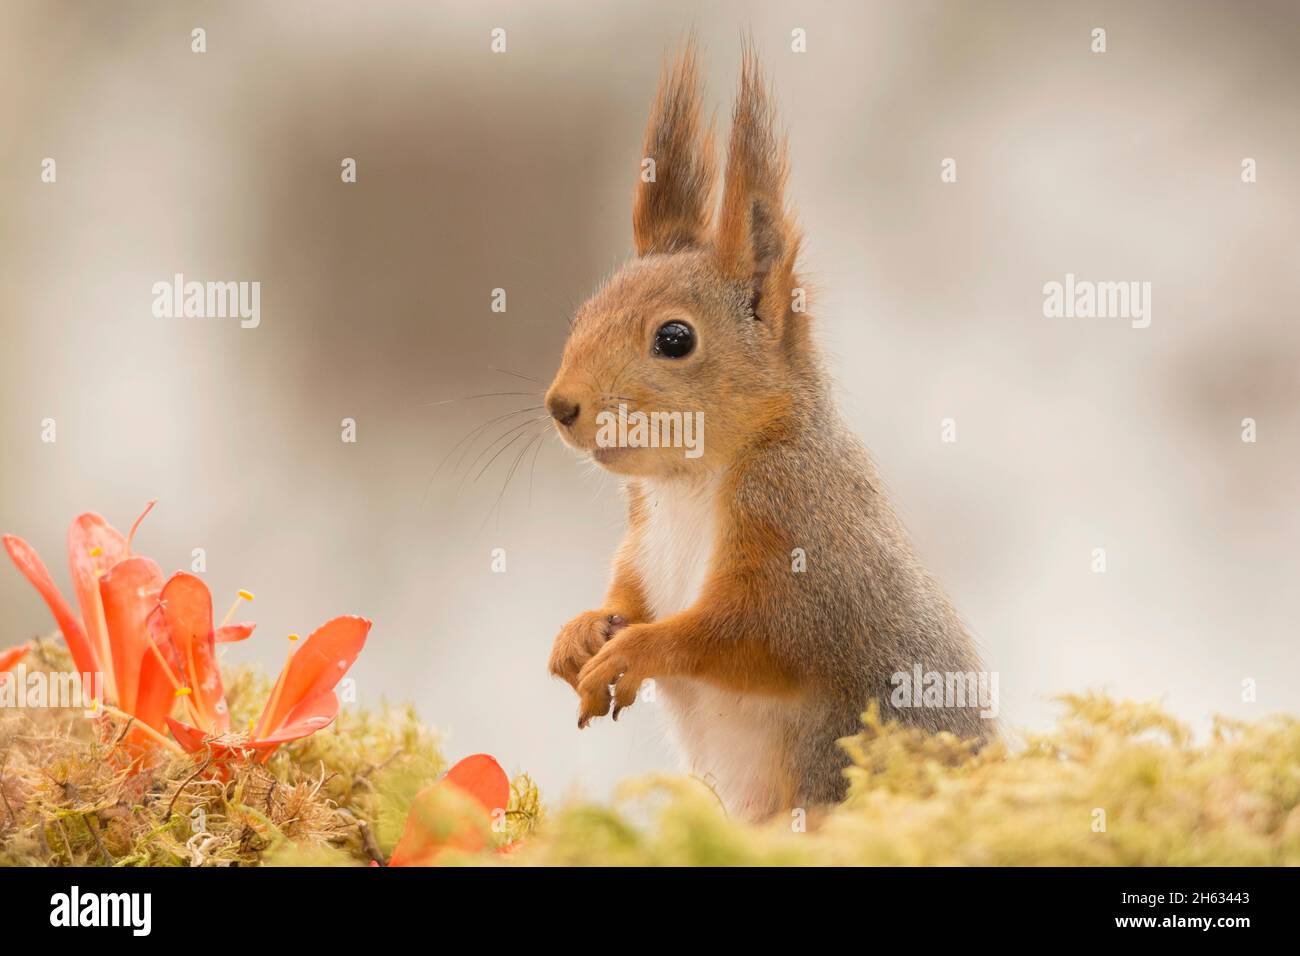 Nahaufnahme des roten Eichhörnchens mit orangefarbenen Blüten, die im Moos stehen Stockfoto